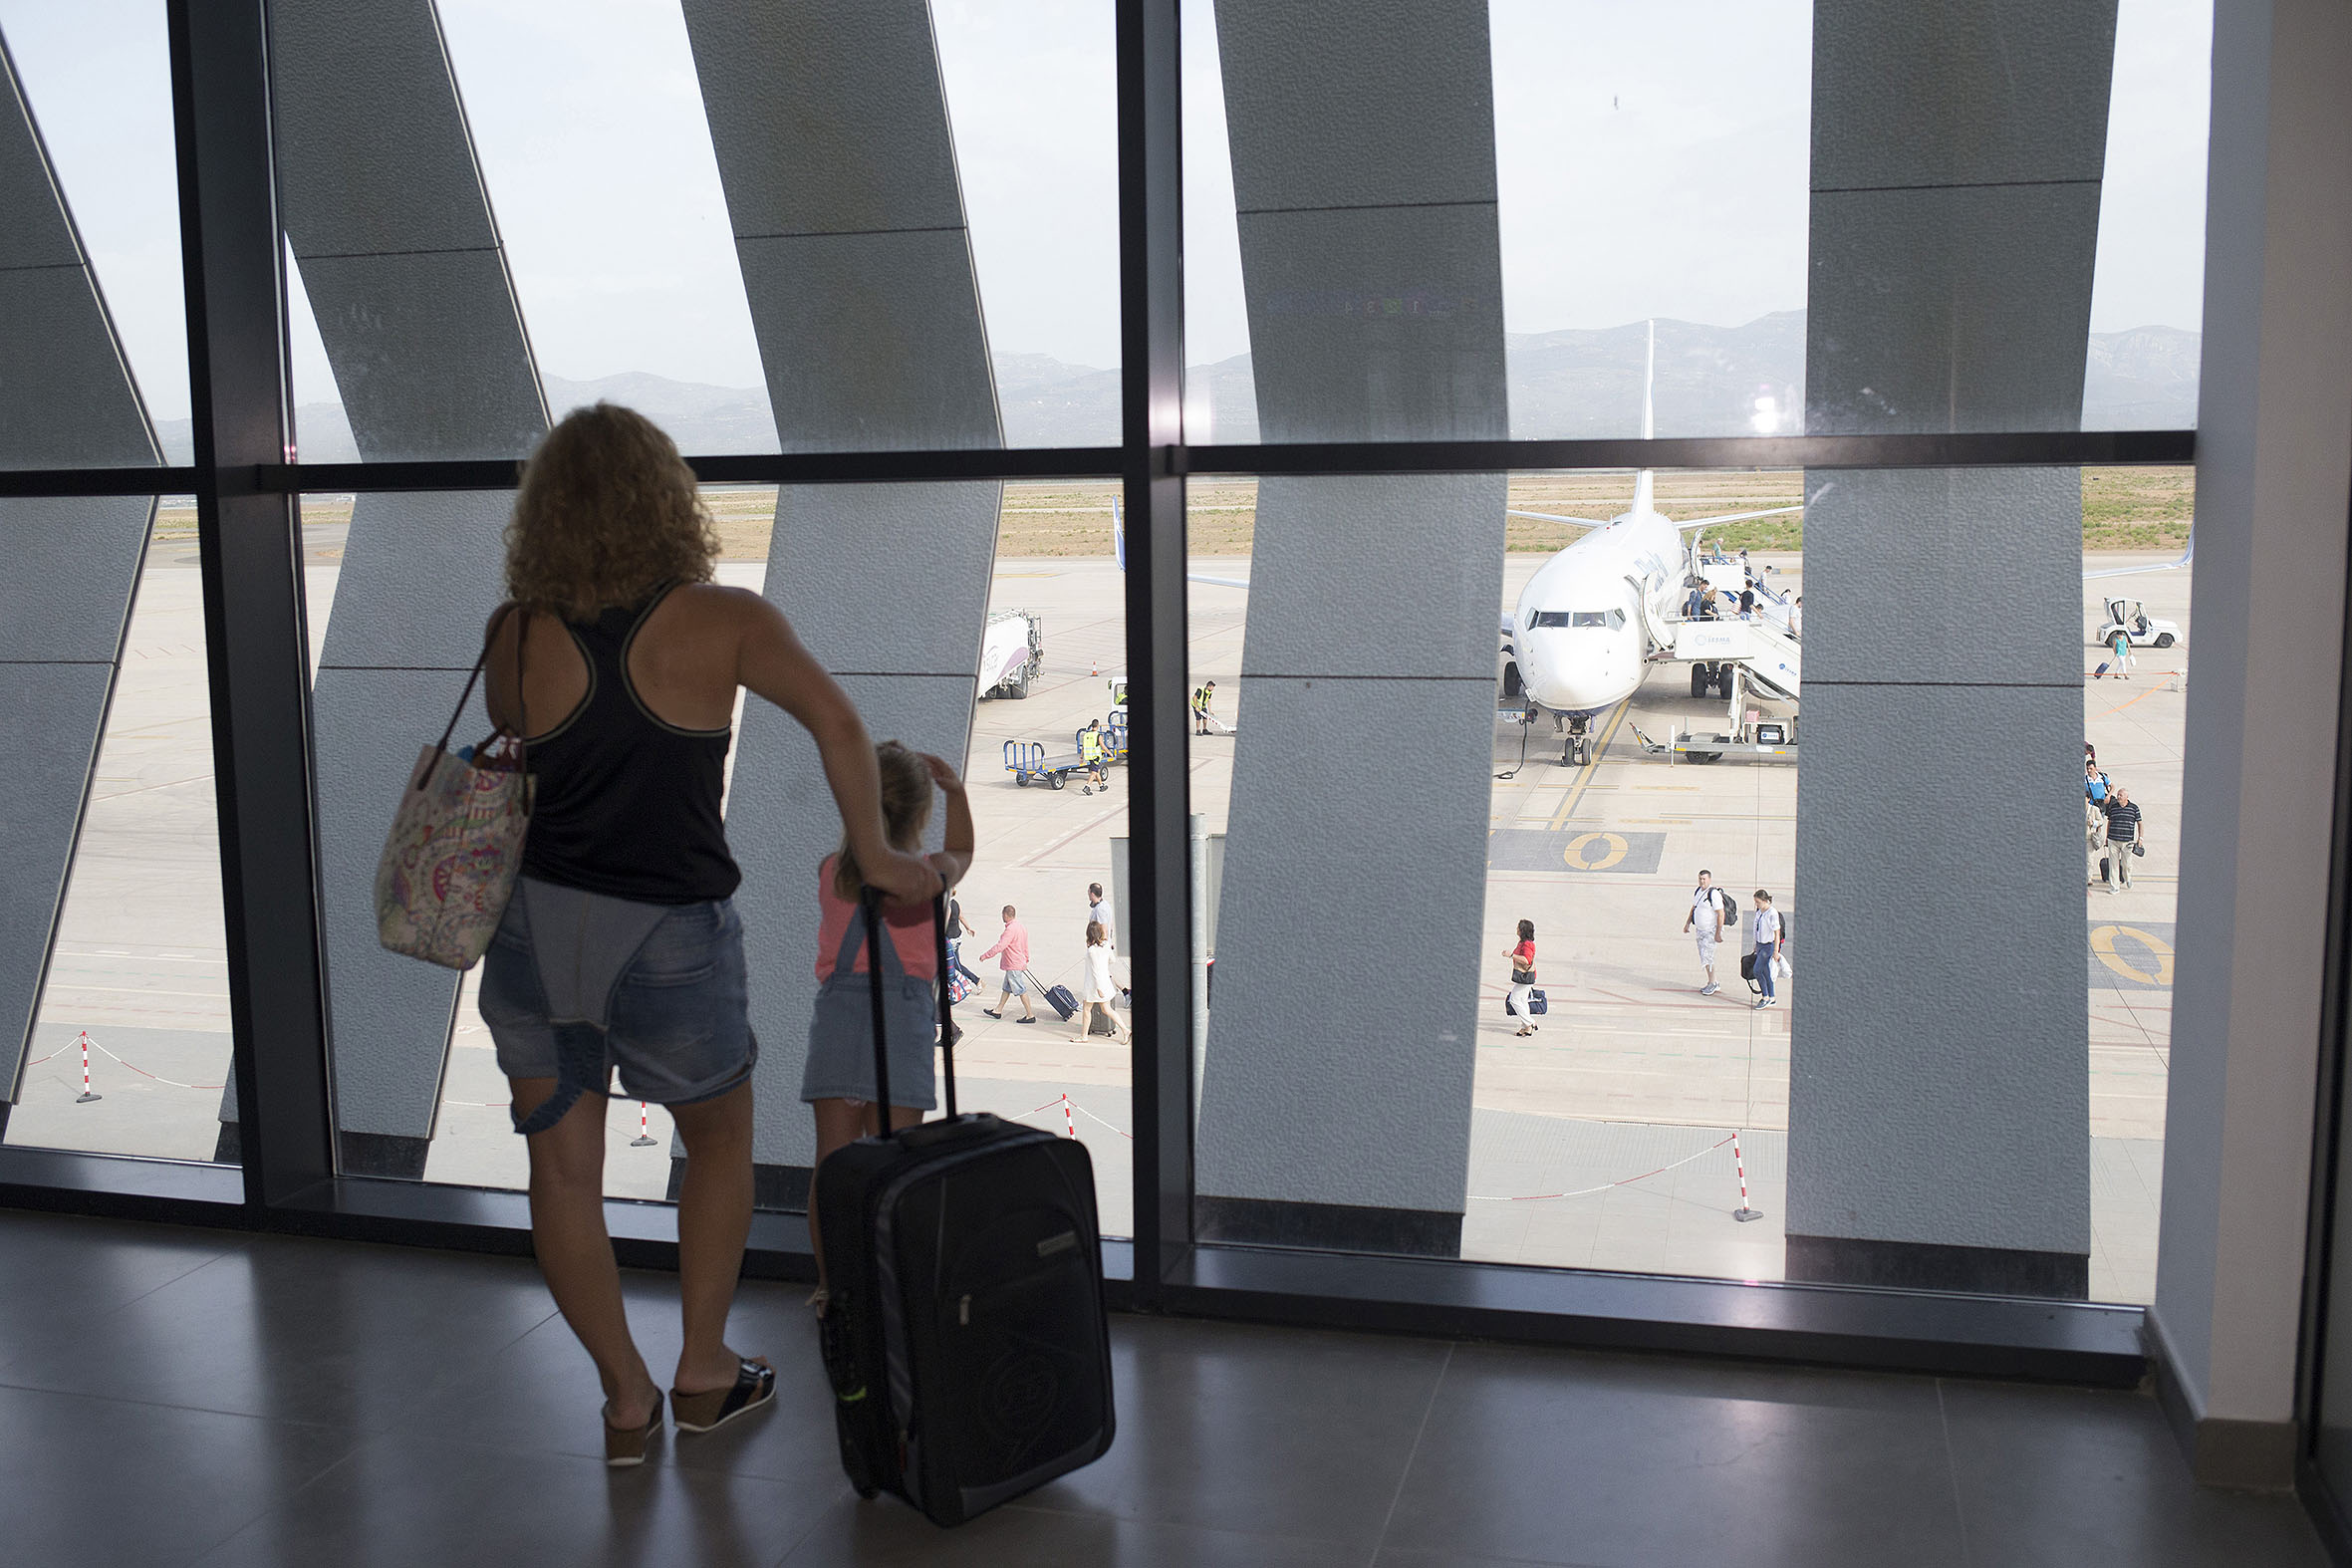 El aeropuerto de Castellón supera en junio la cifra de pasajes de las anualidades completas de 2020 y 2021